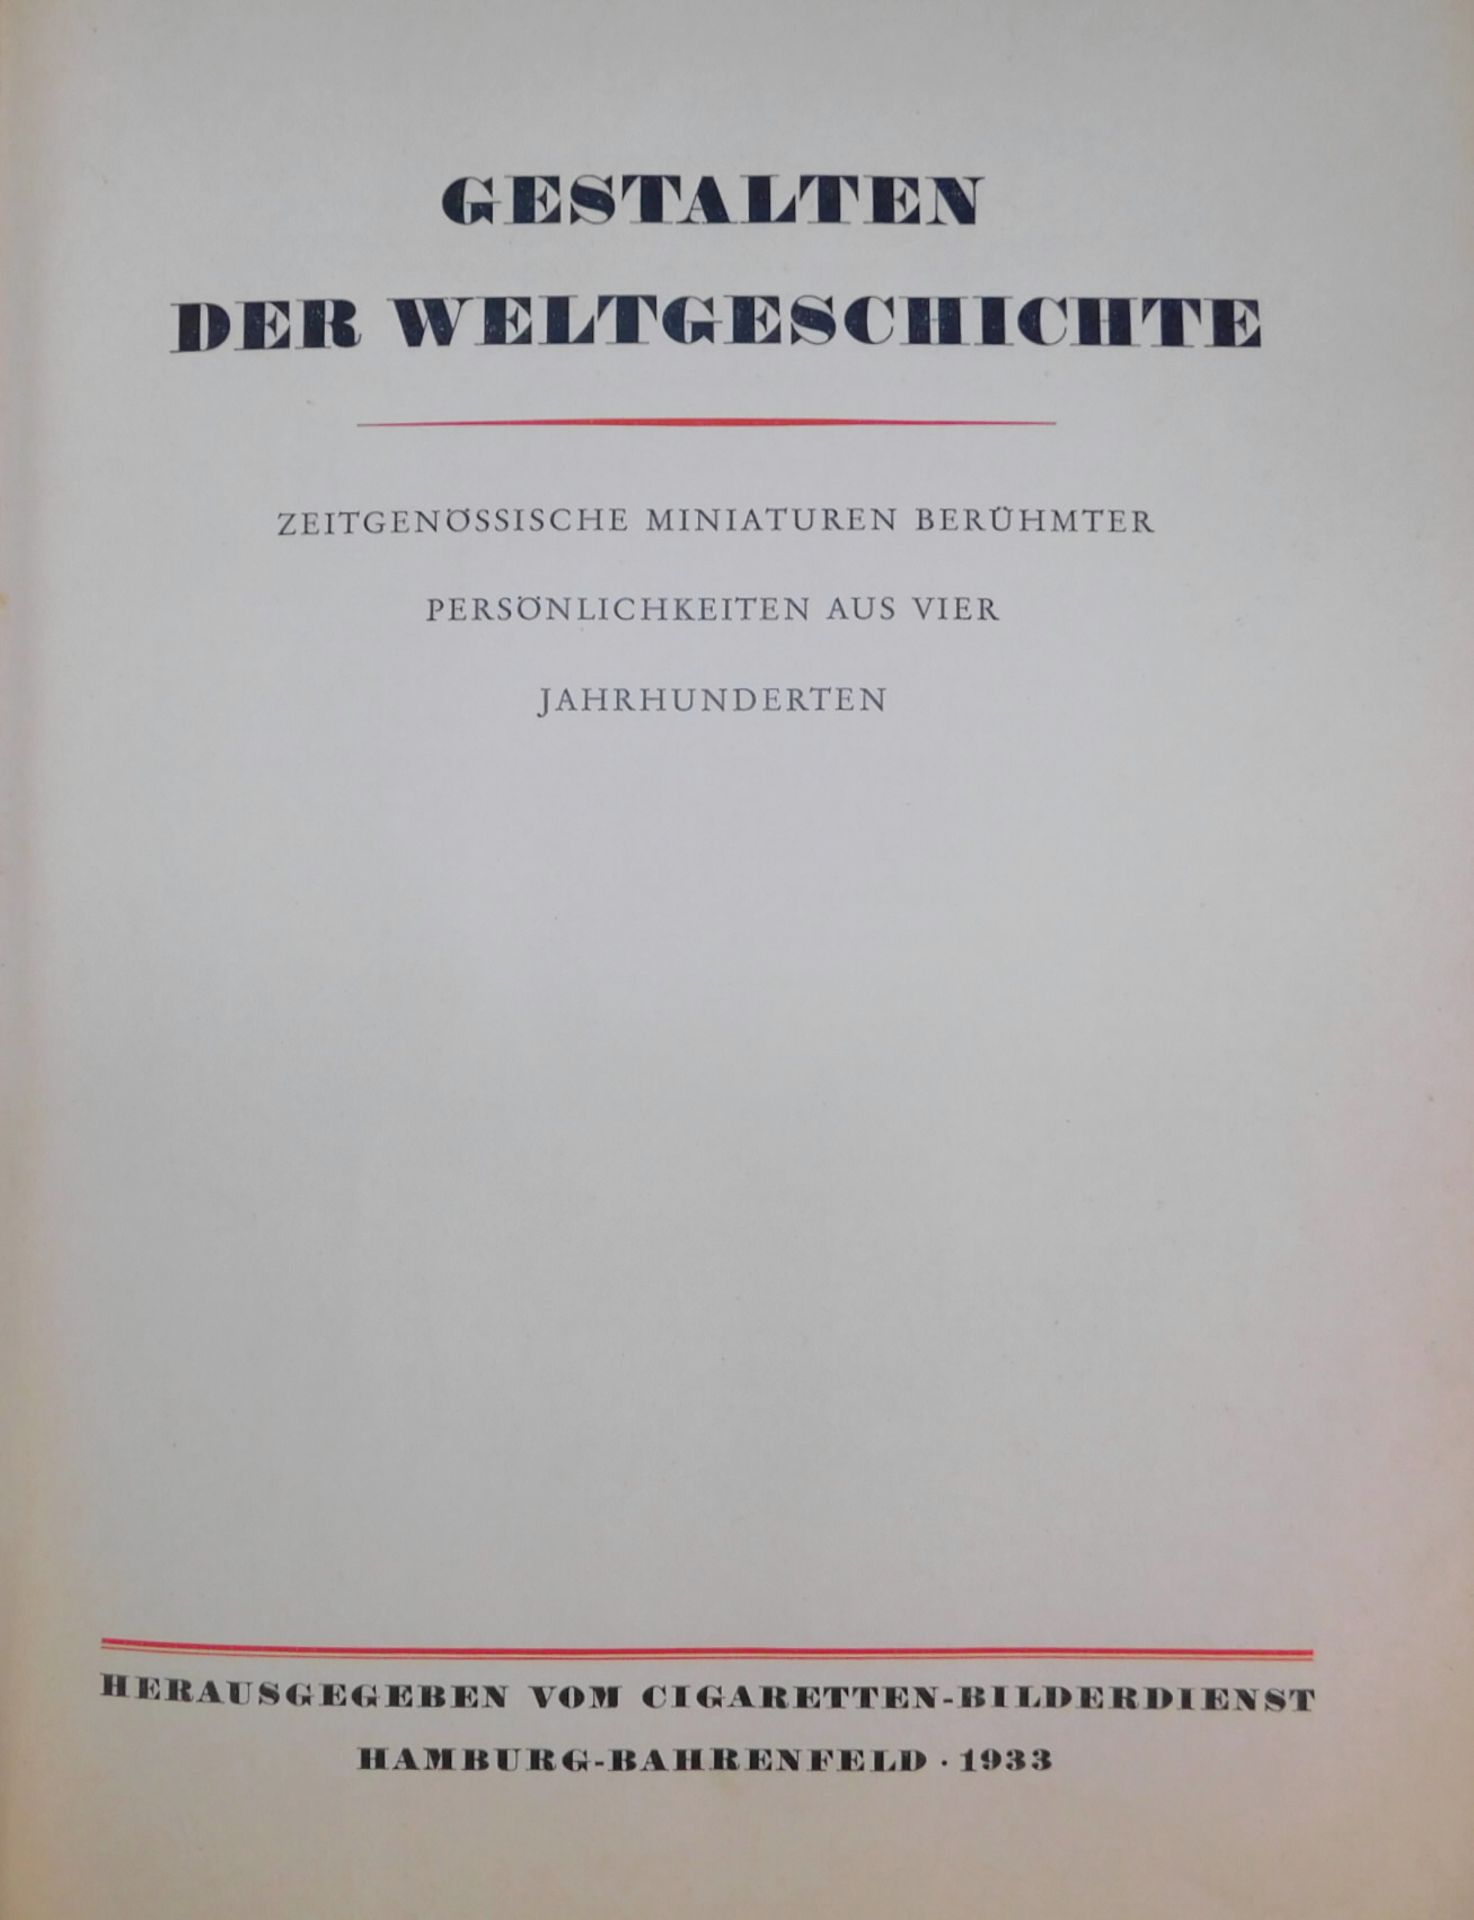 Sammelalbum gebunden "Gestalten der Weltgeschichte", 1933, Cigaretten Bilderdienst, Hamburg-Bahr - Image 3 of 4